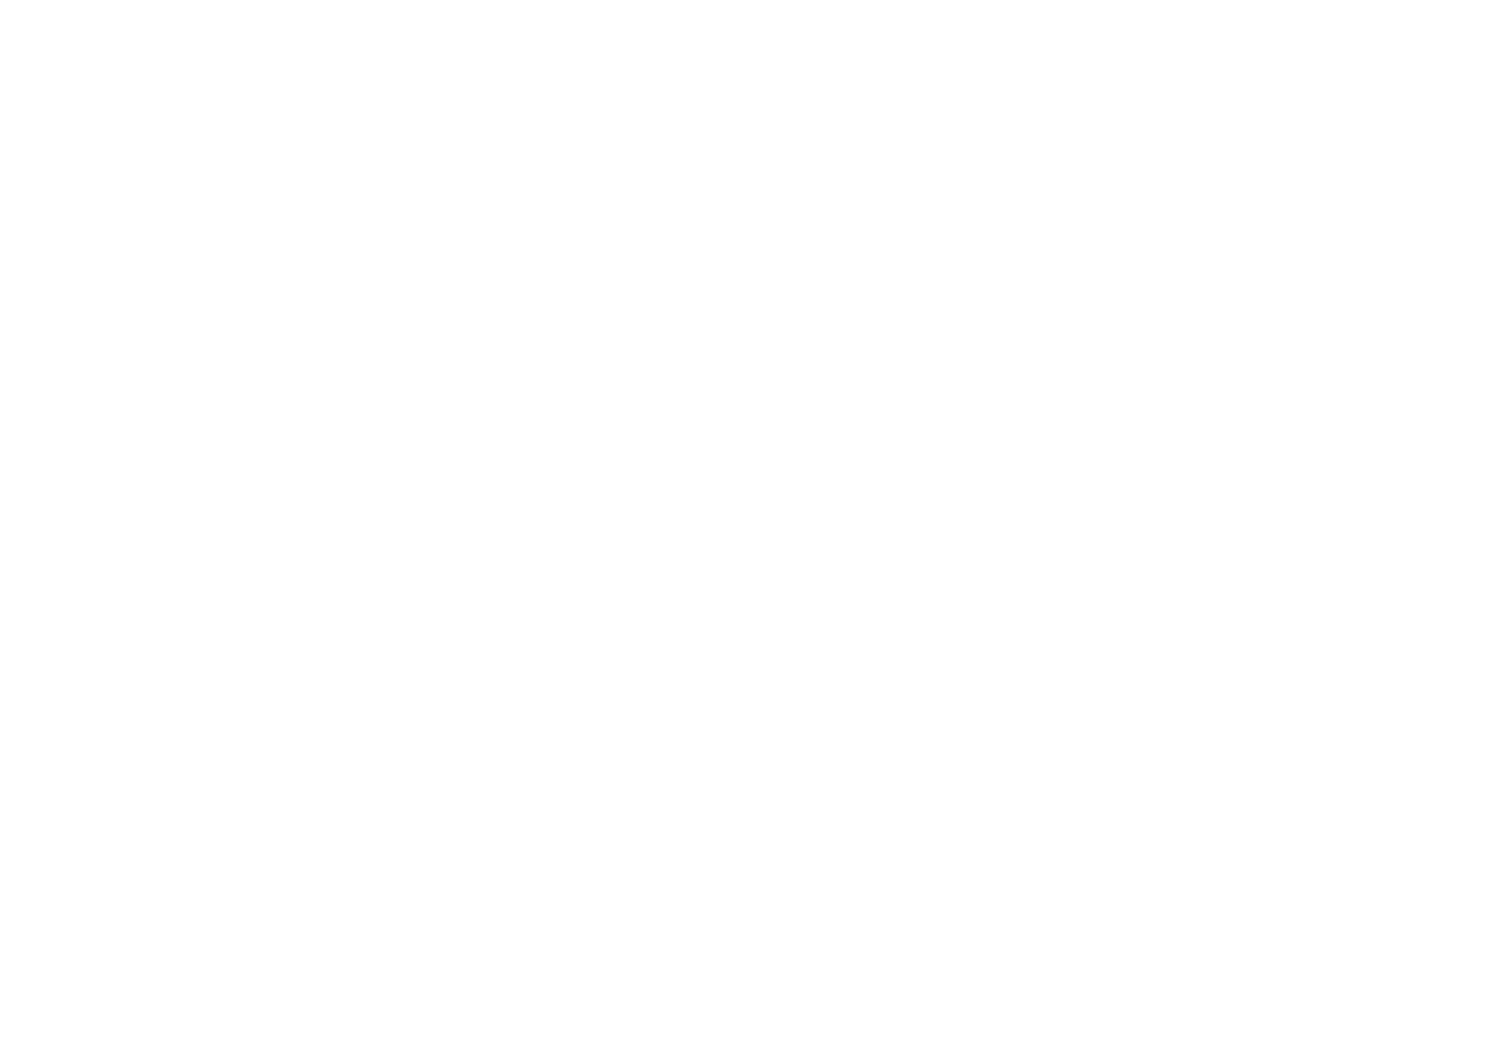 Sailways Festival